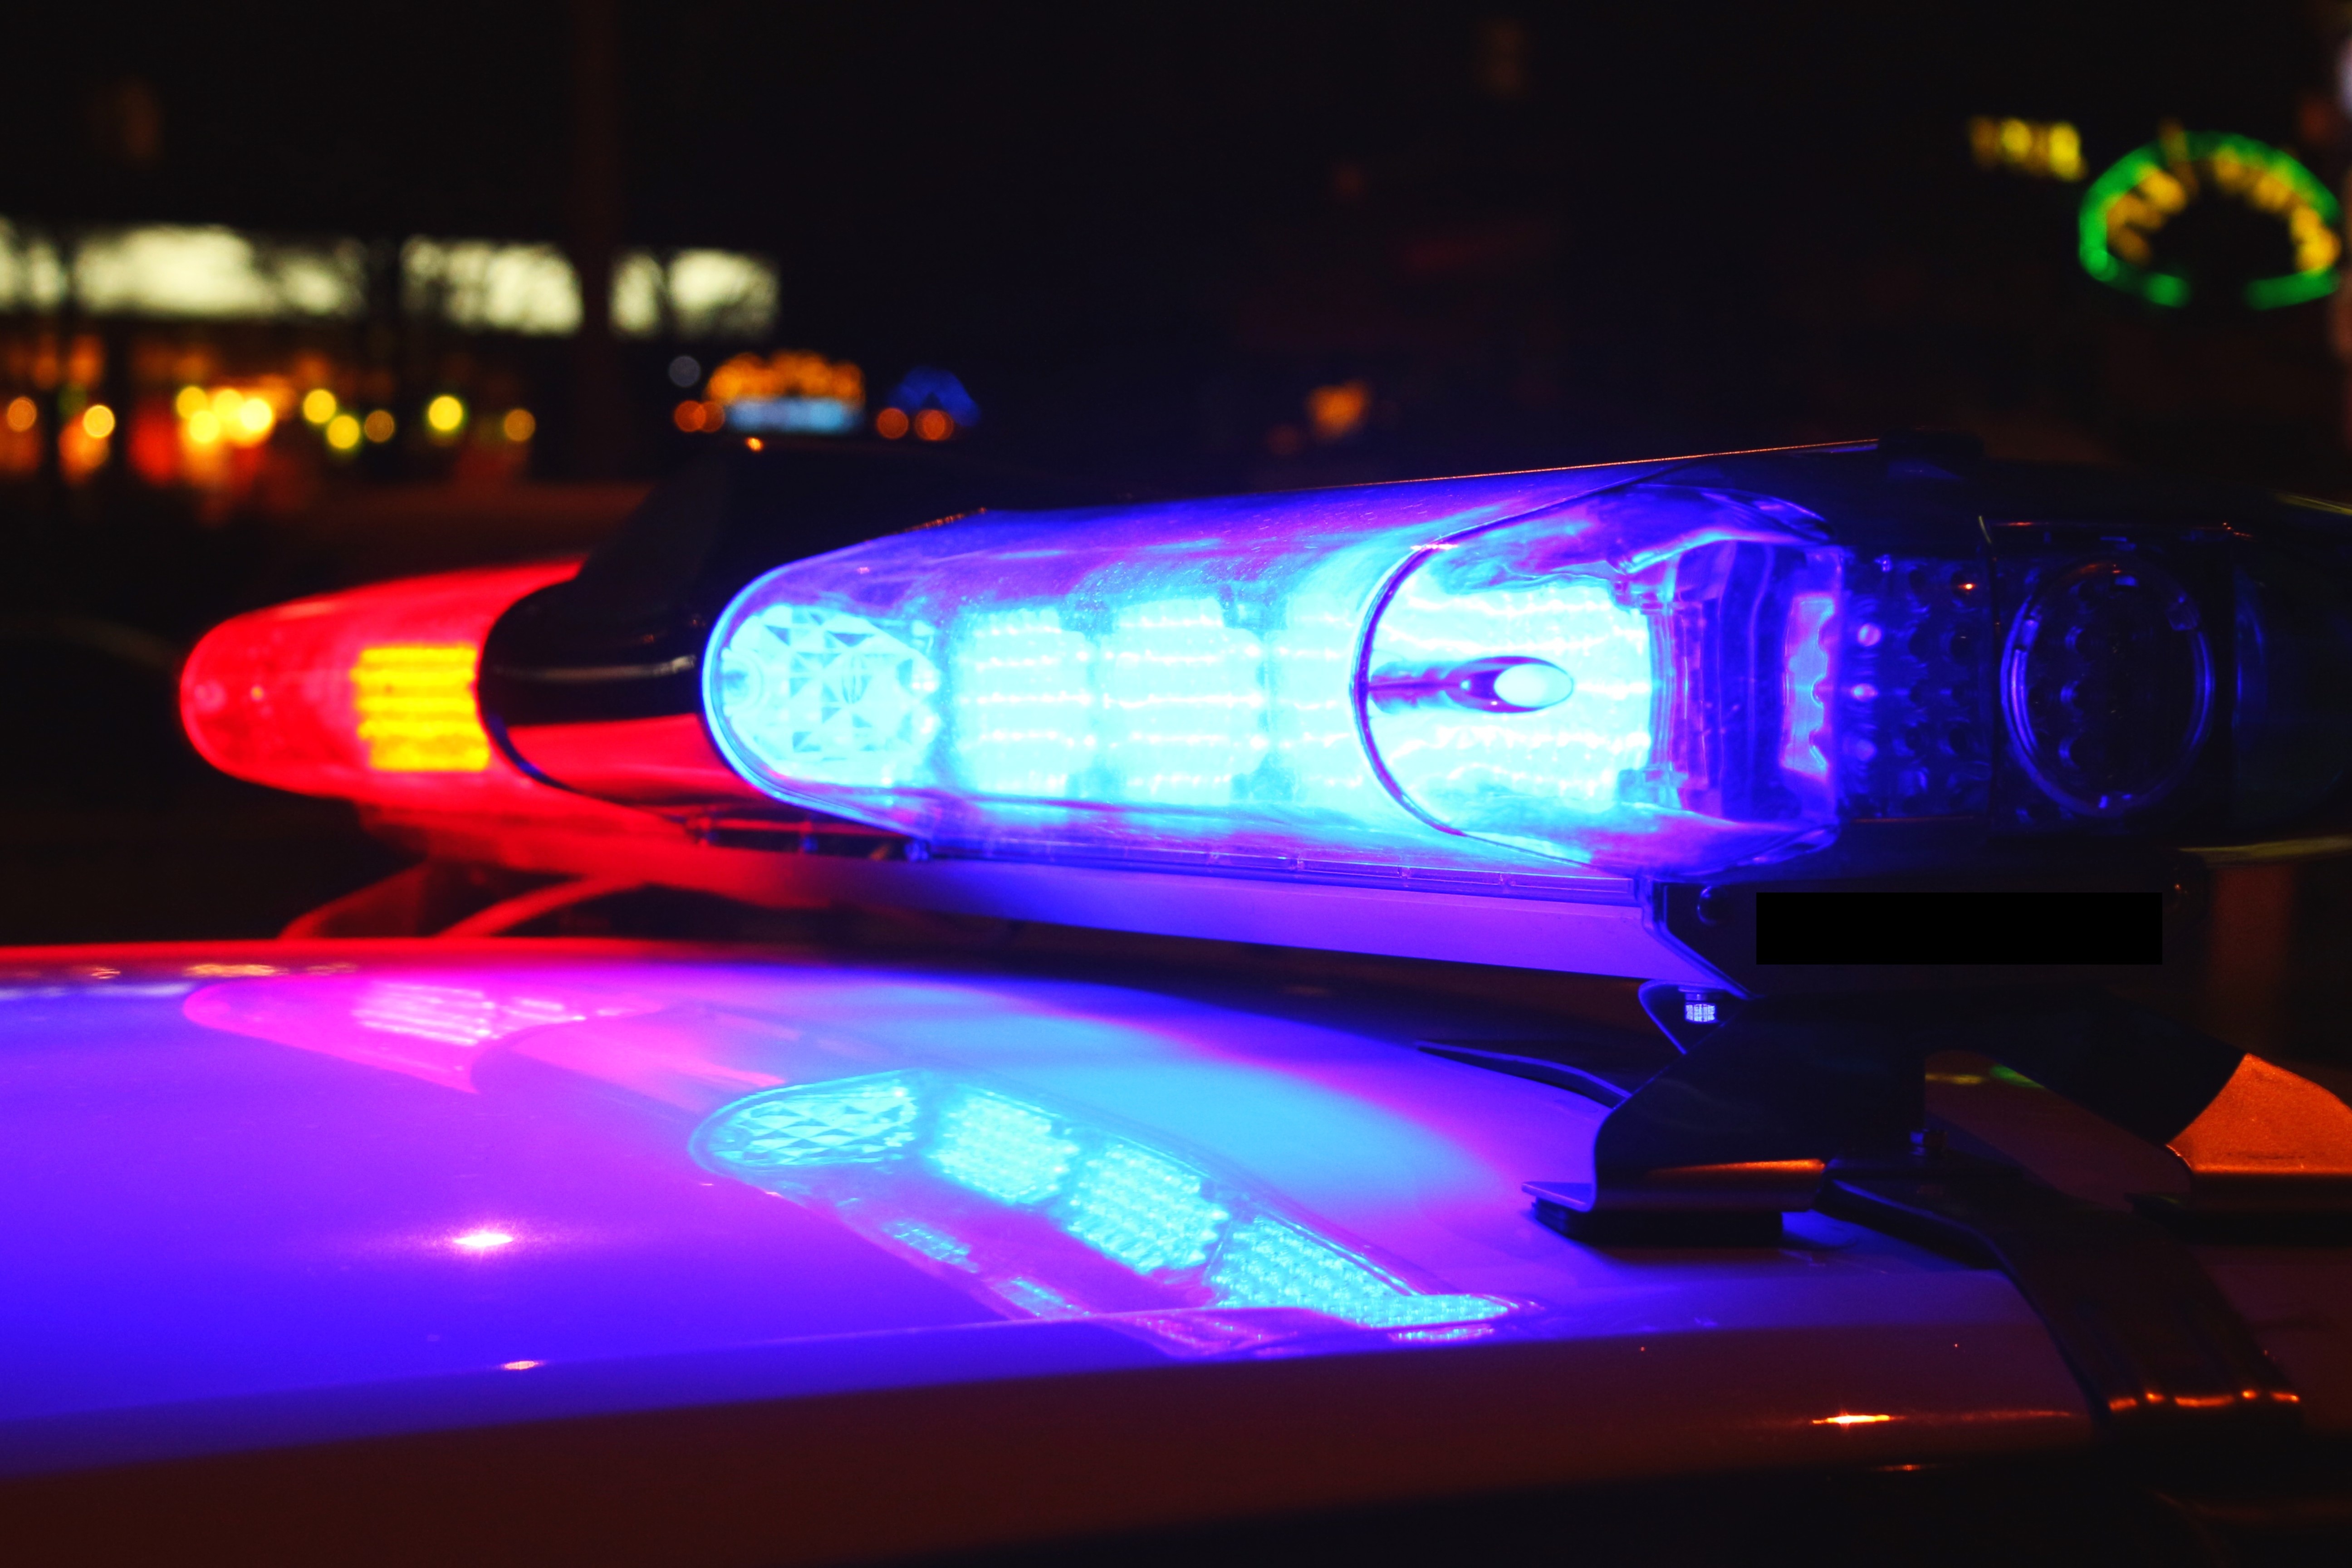 Maryland Police Officer Arrested, Suspended After Bar Fight